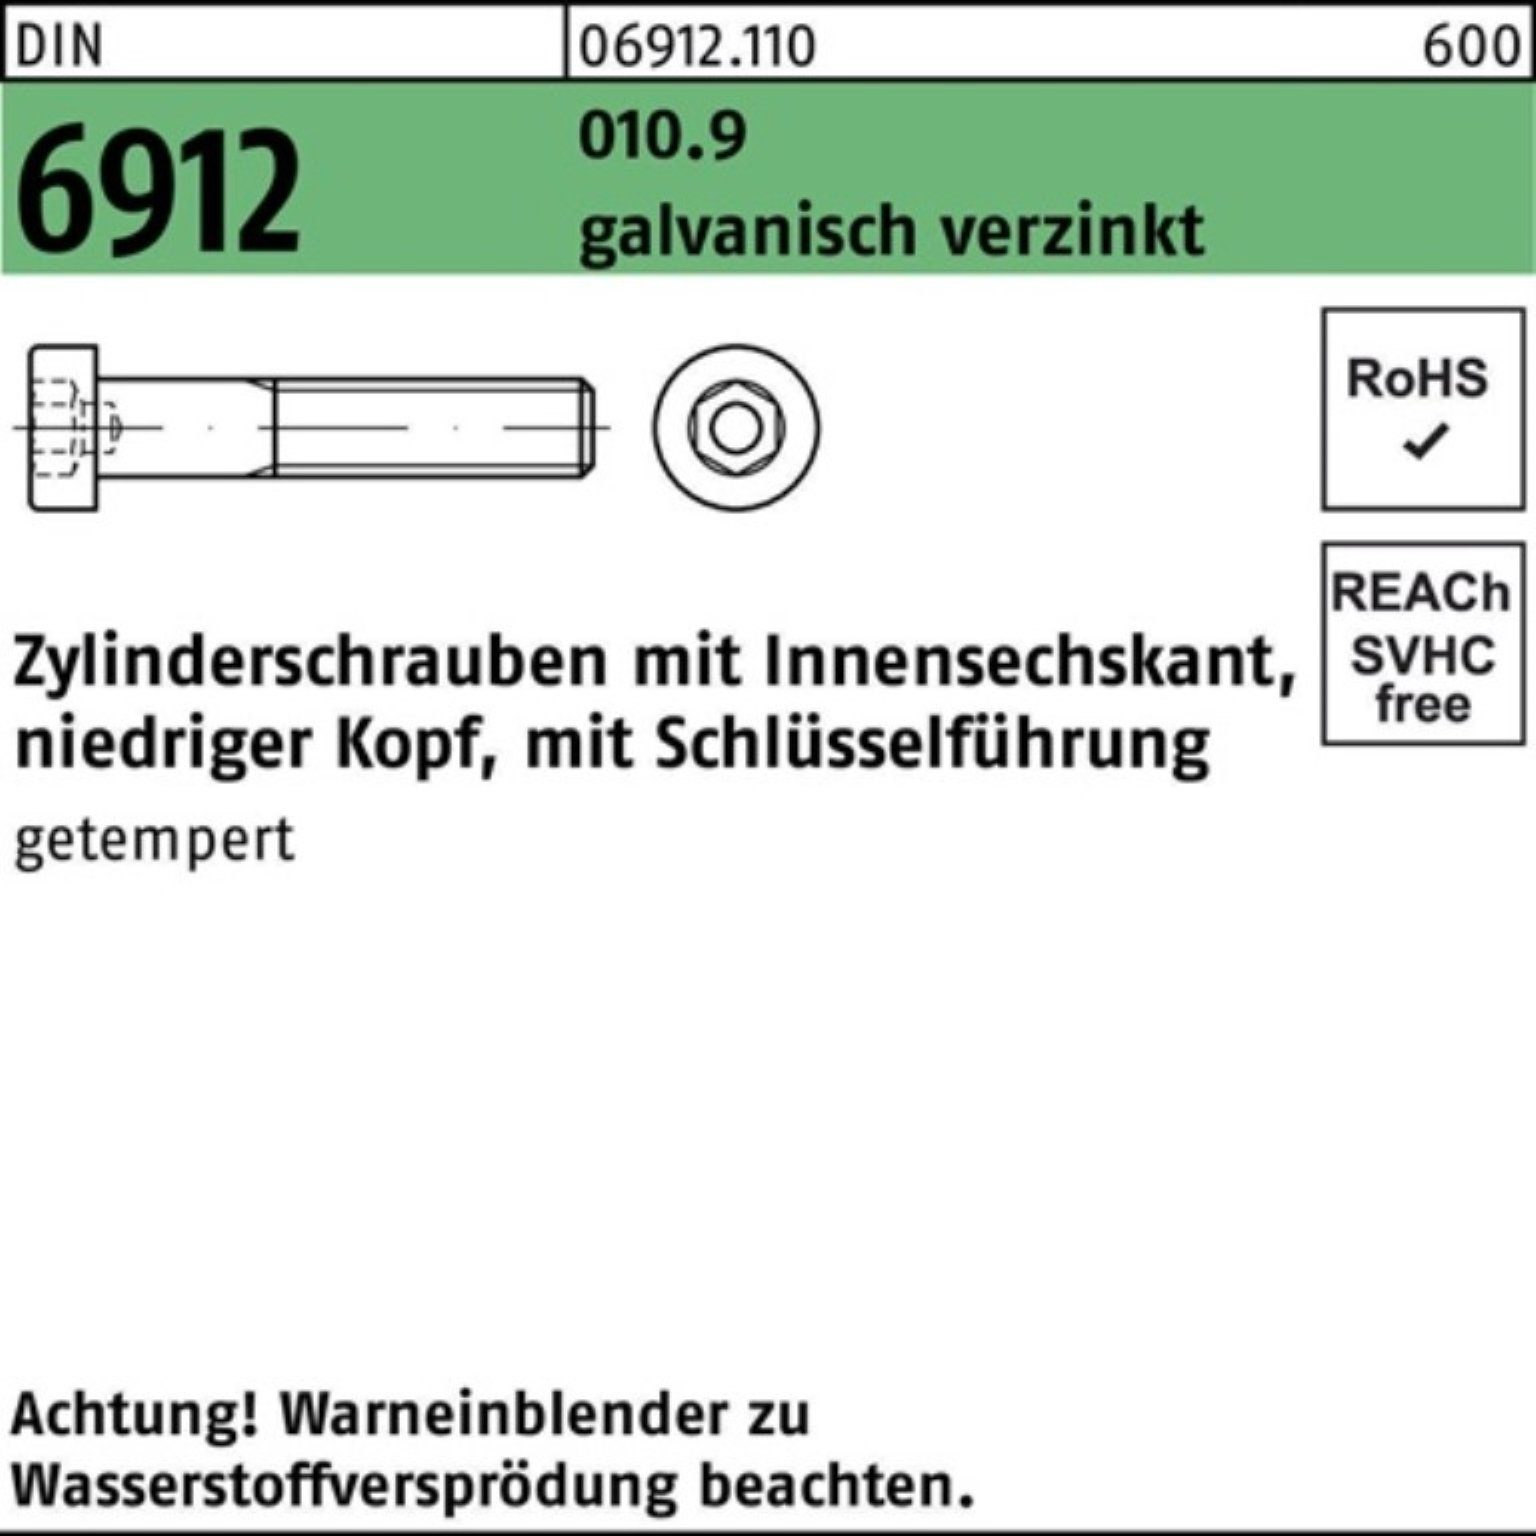 6912 Zylinderschraube Innen-6kt Pack Zylinderschraube 010.9 DIN M10x25 200er Reyher galv.verz.